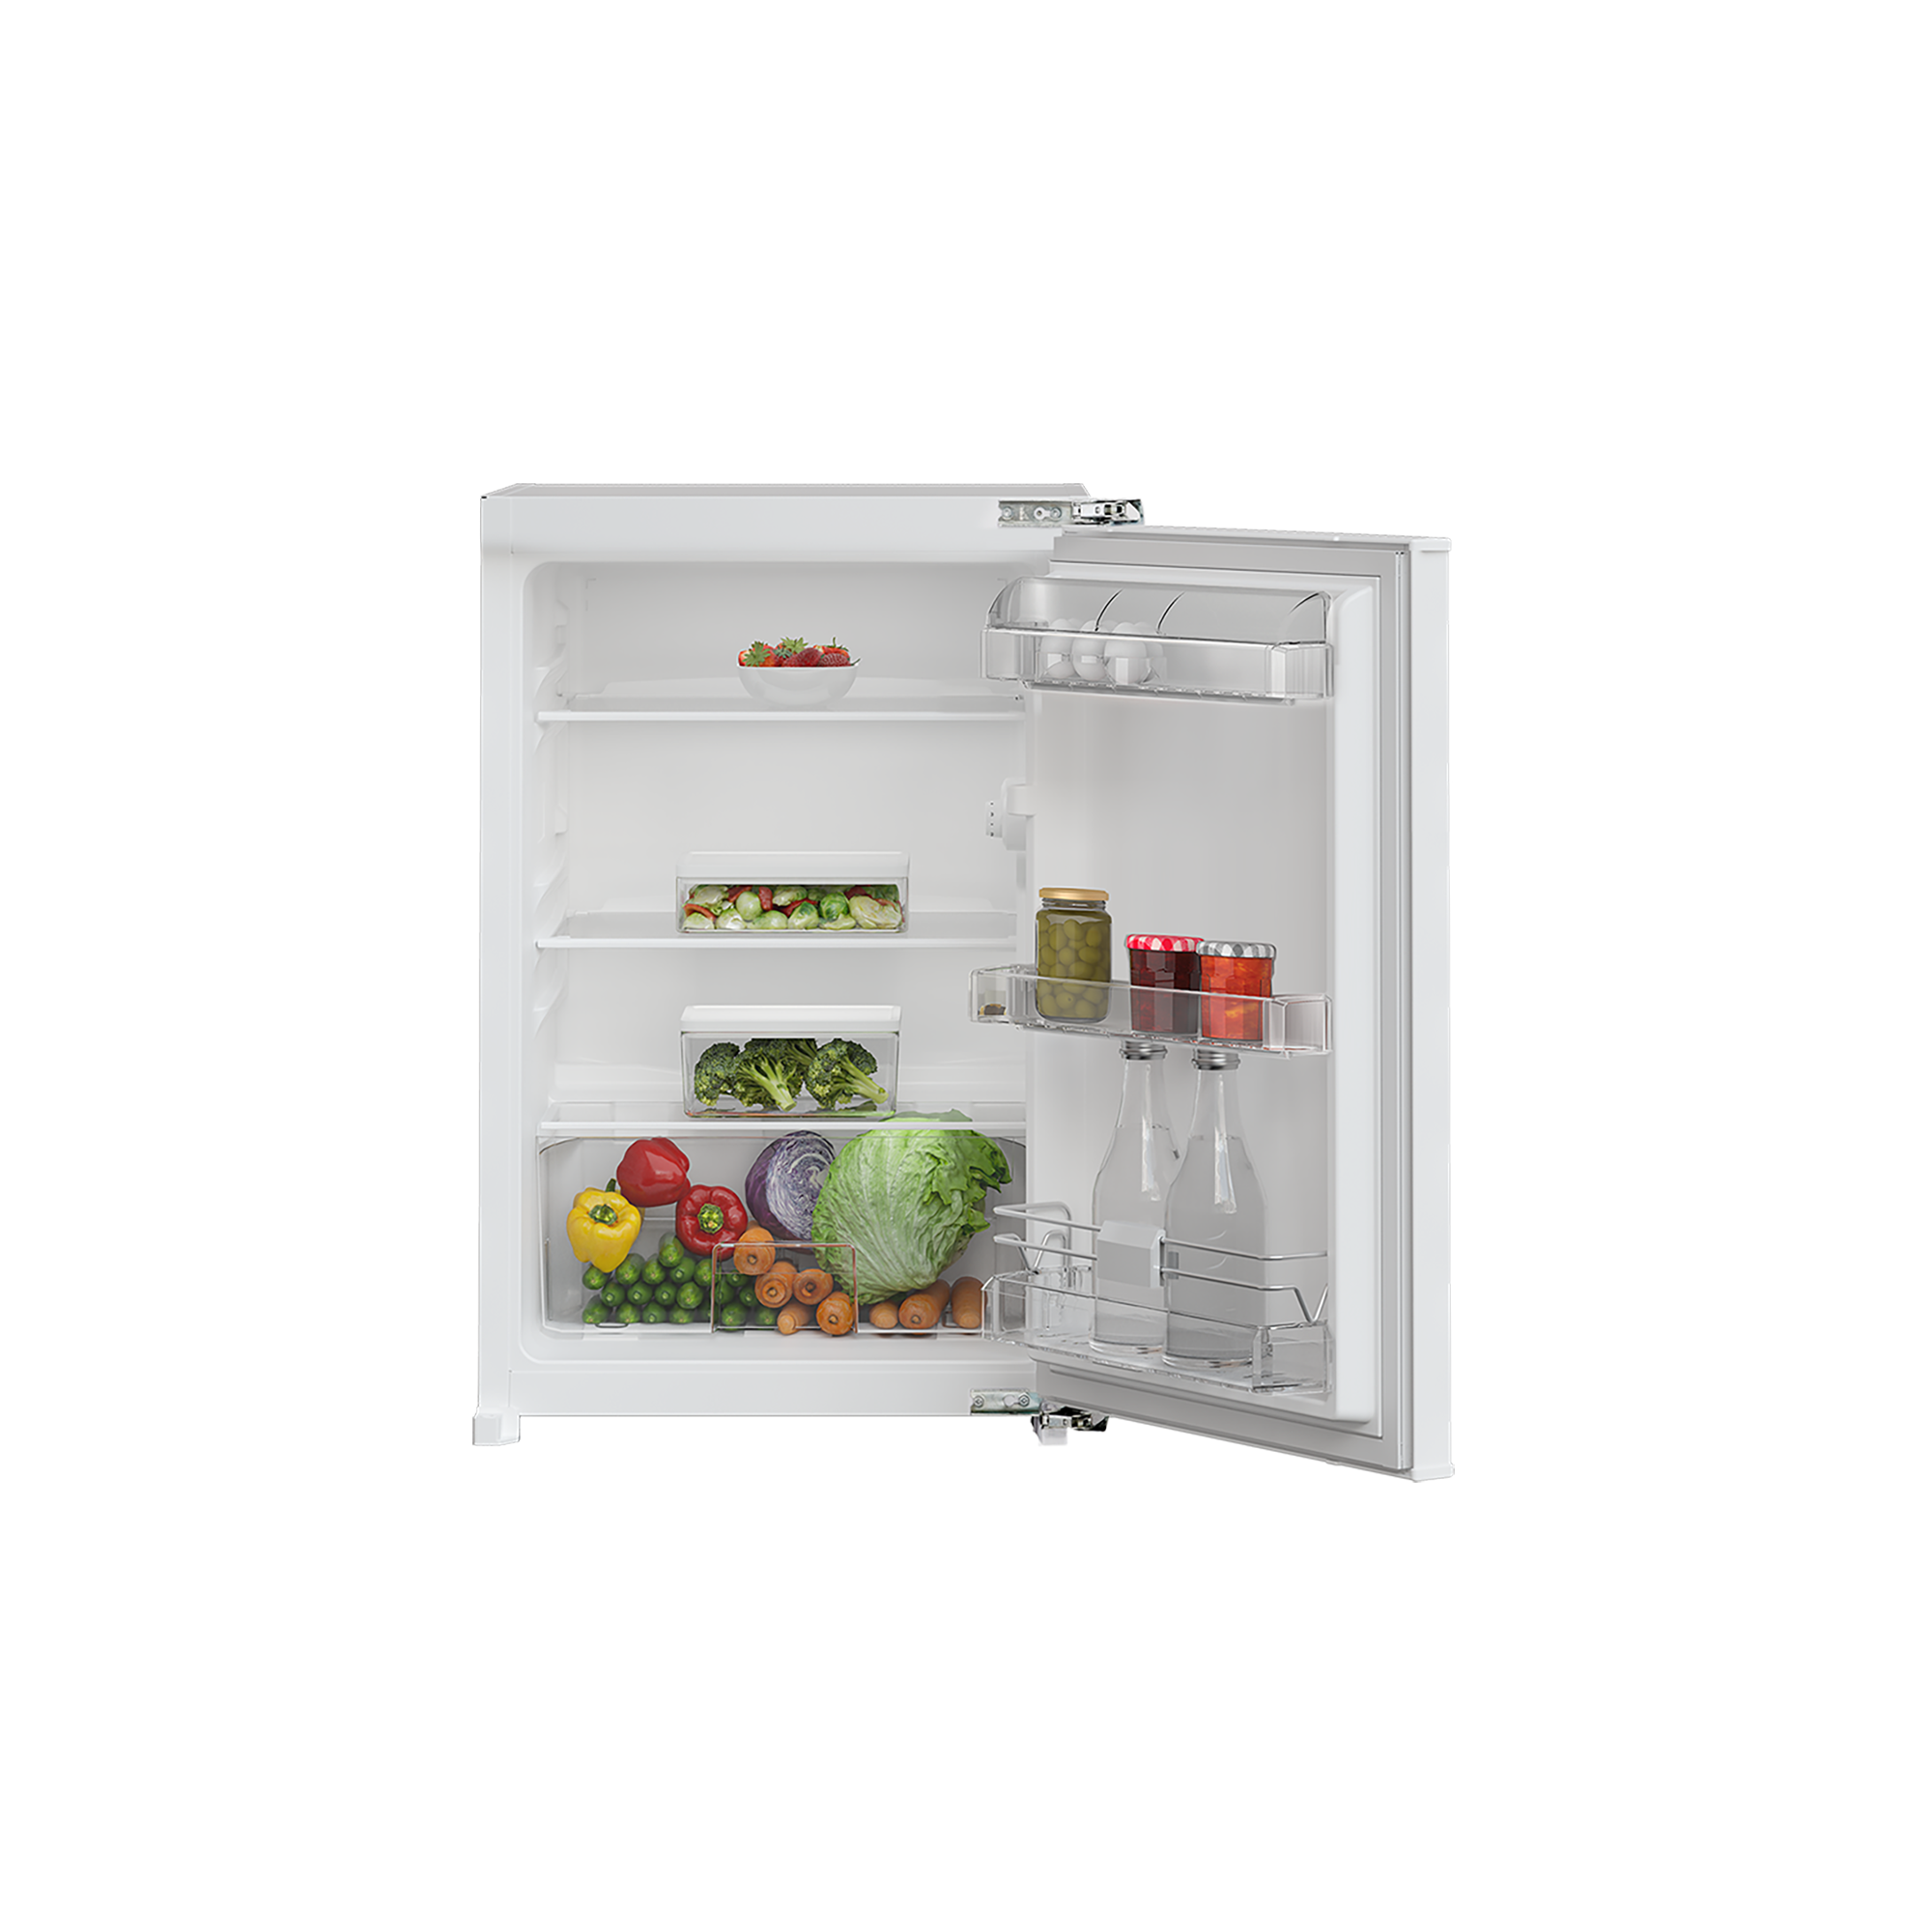 GTMI10141FN | Kühlschrank Grundig | Gefrieren - kaufen jetzt - & Kühlen